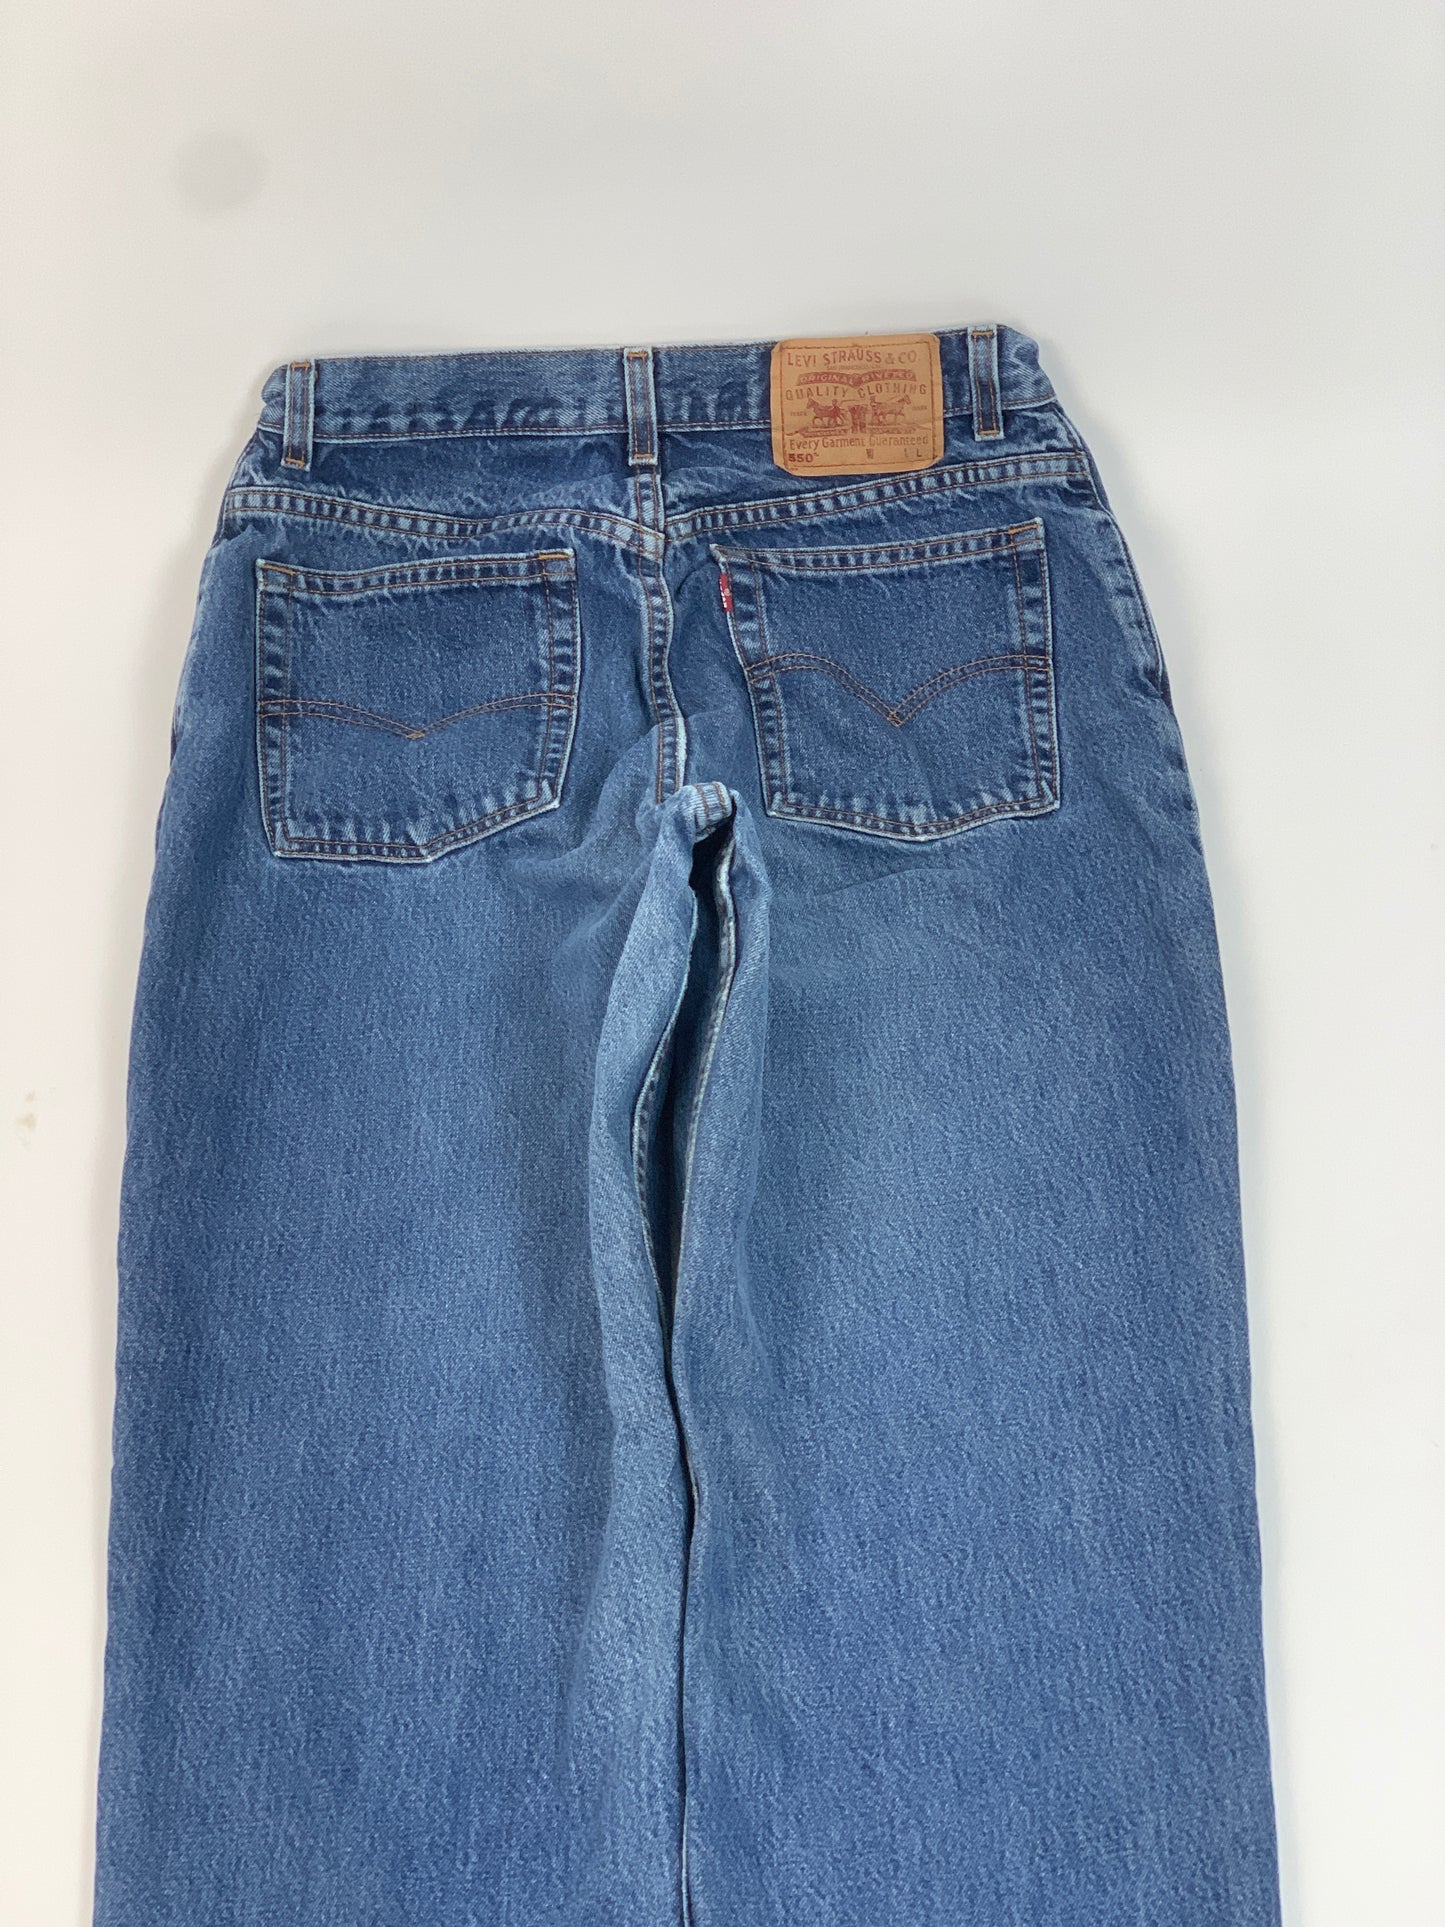 Levis 550 Vintage Jeans - 32